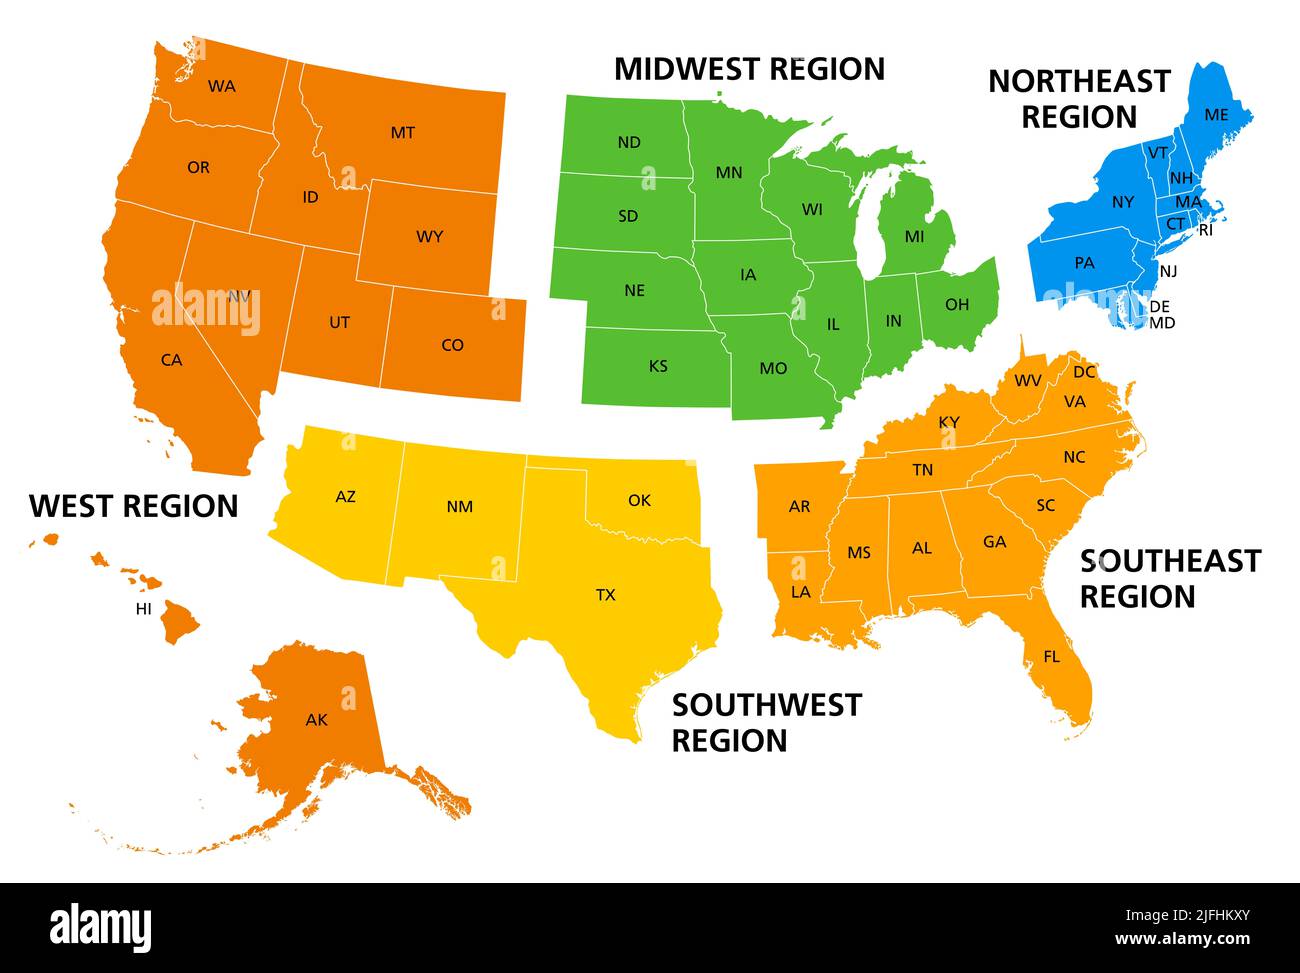 Stati Uniti, regioni geografiche, carta politica colorata. Cinque regioni, in funzione della loro posizione geografica sul continente. Foto Stock